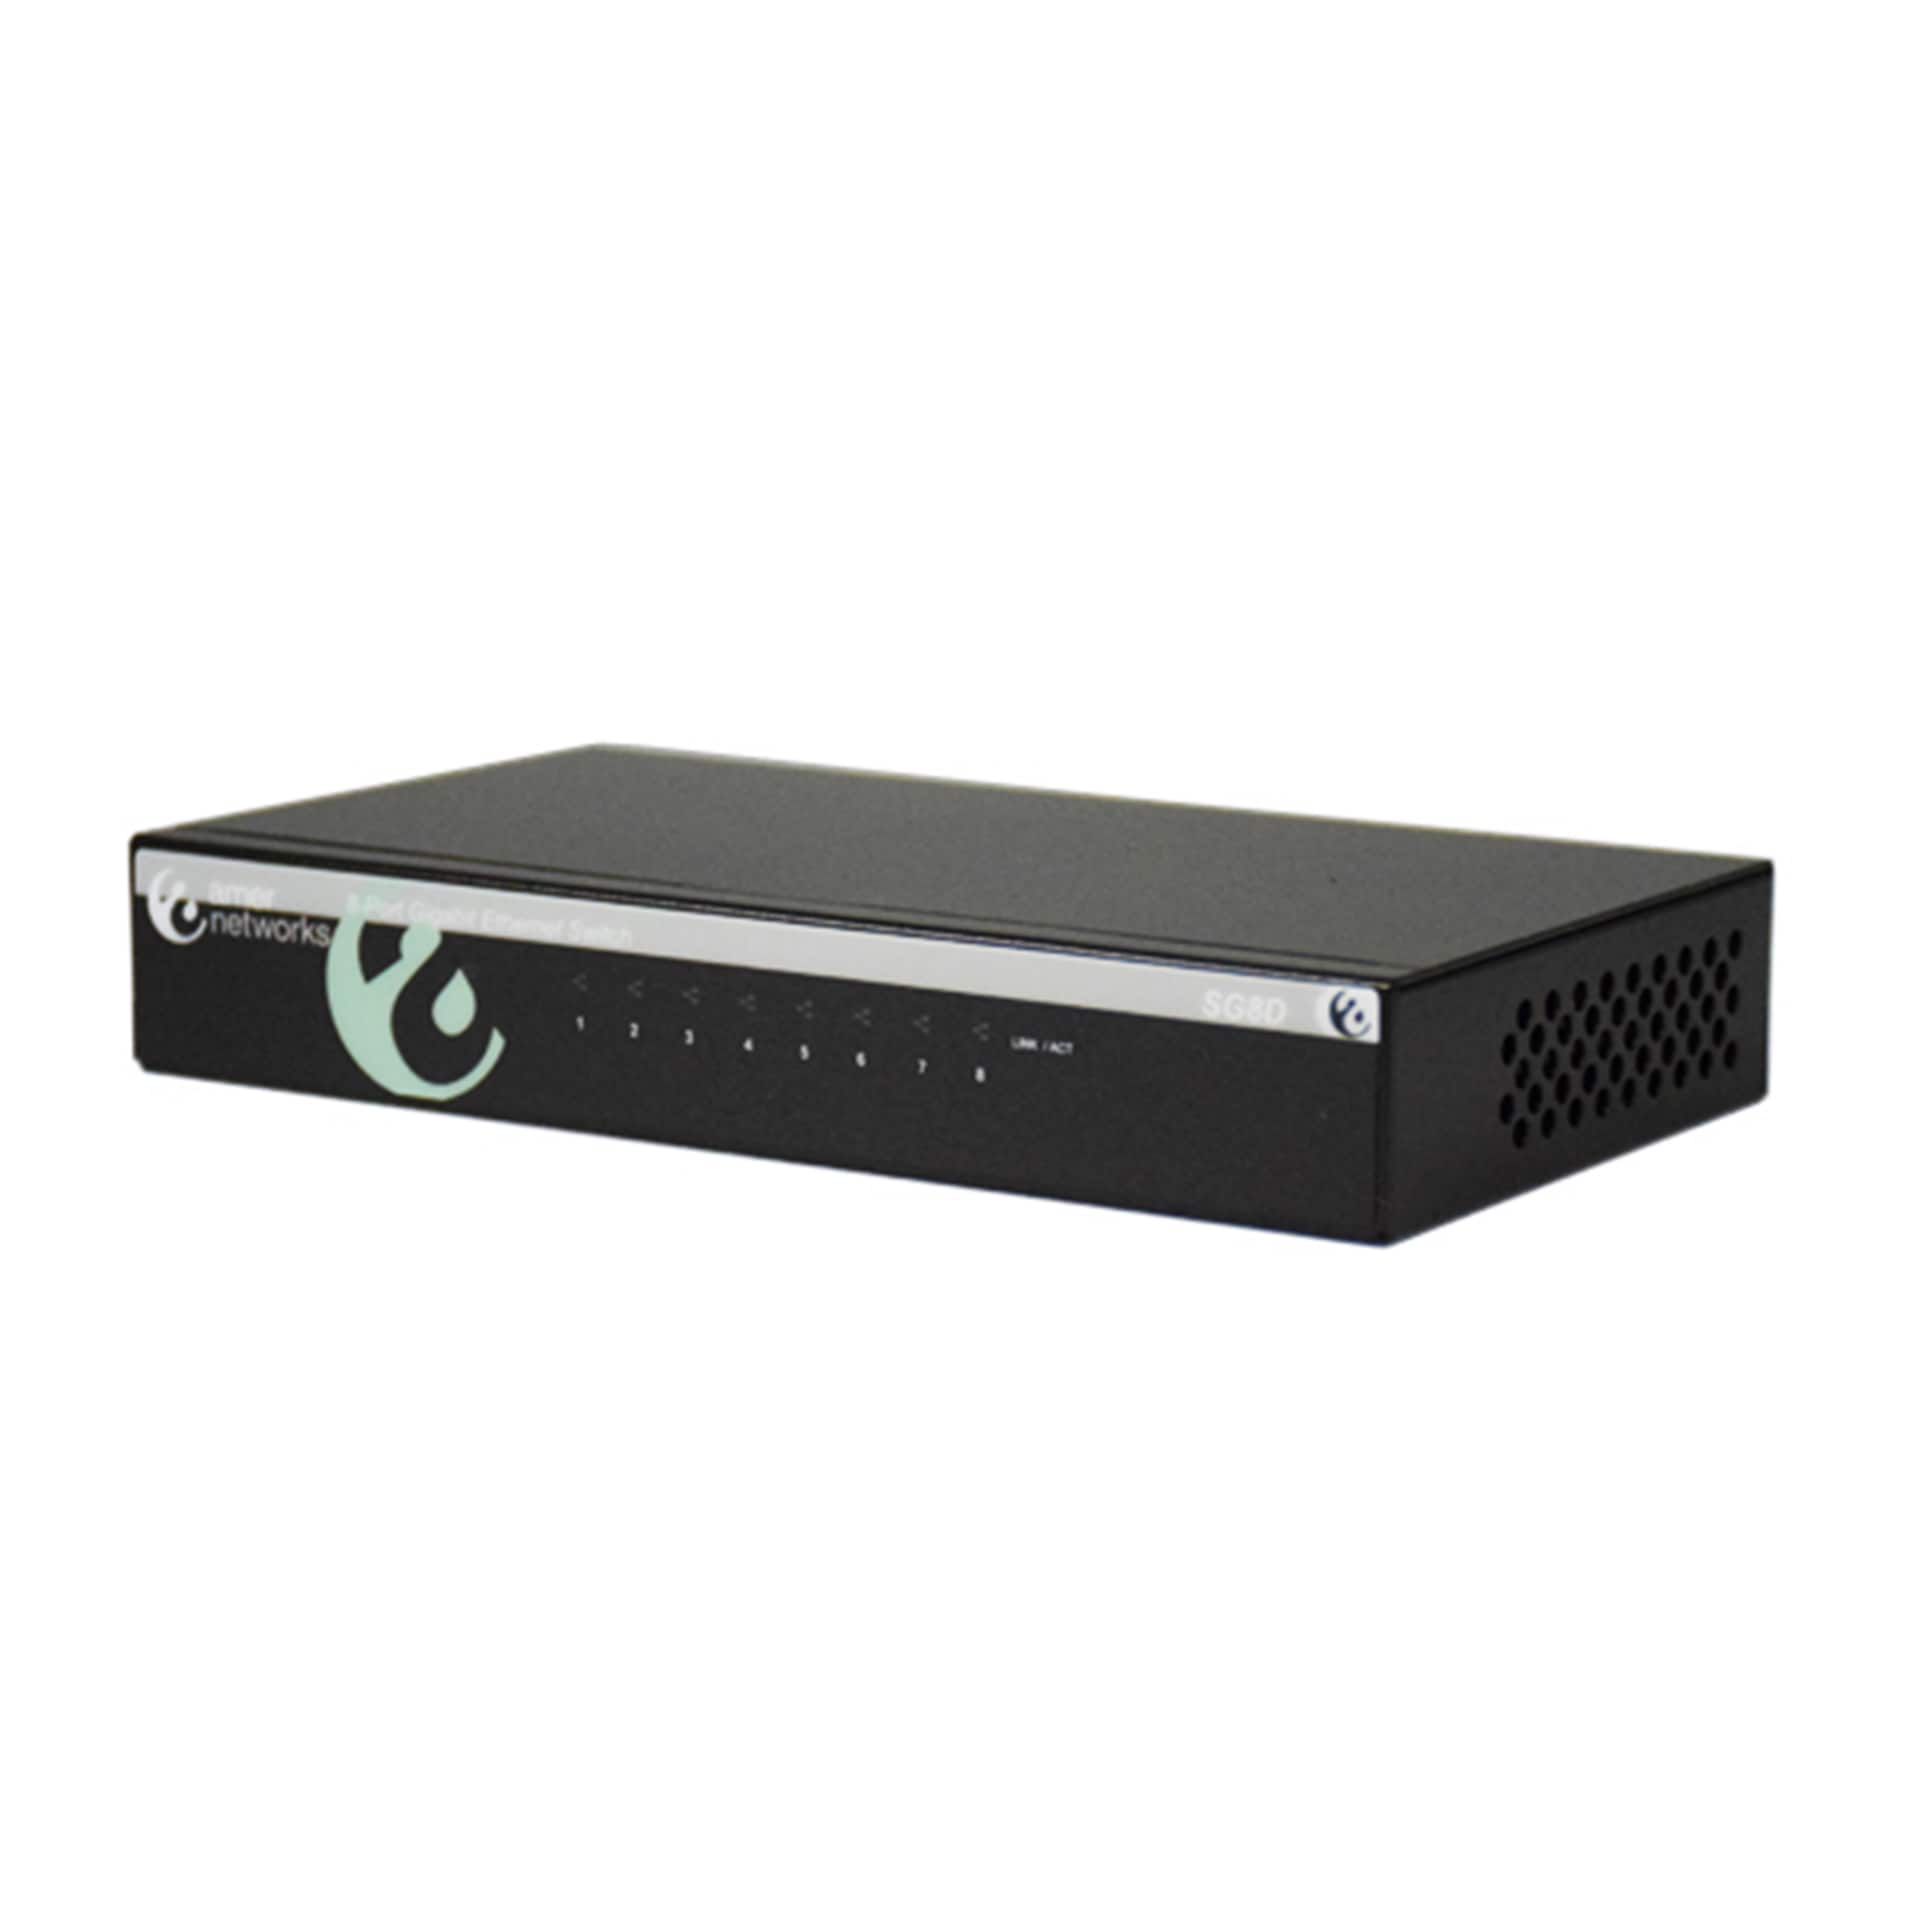 Amer Networks 8 Port 10/100/1000Mbps Gigabit Ethernet Desktop Switch